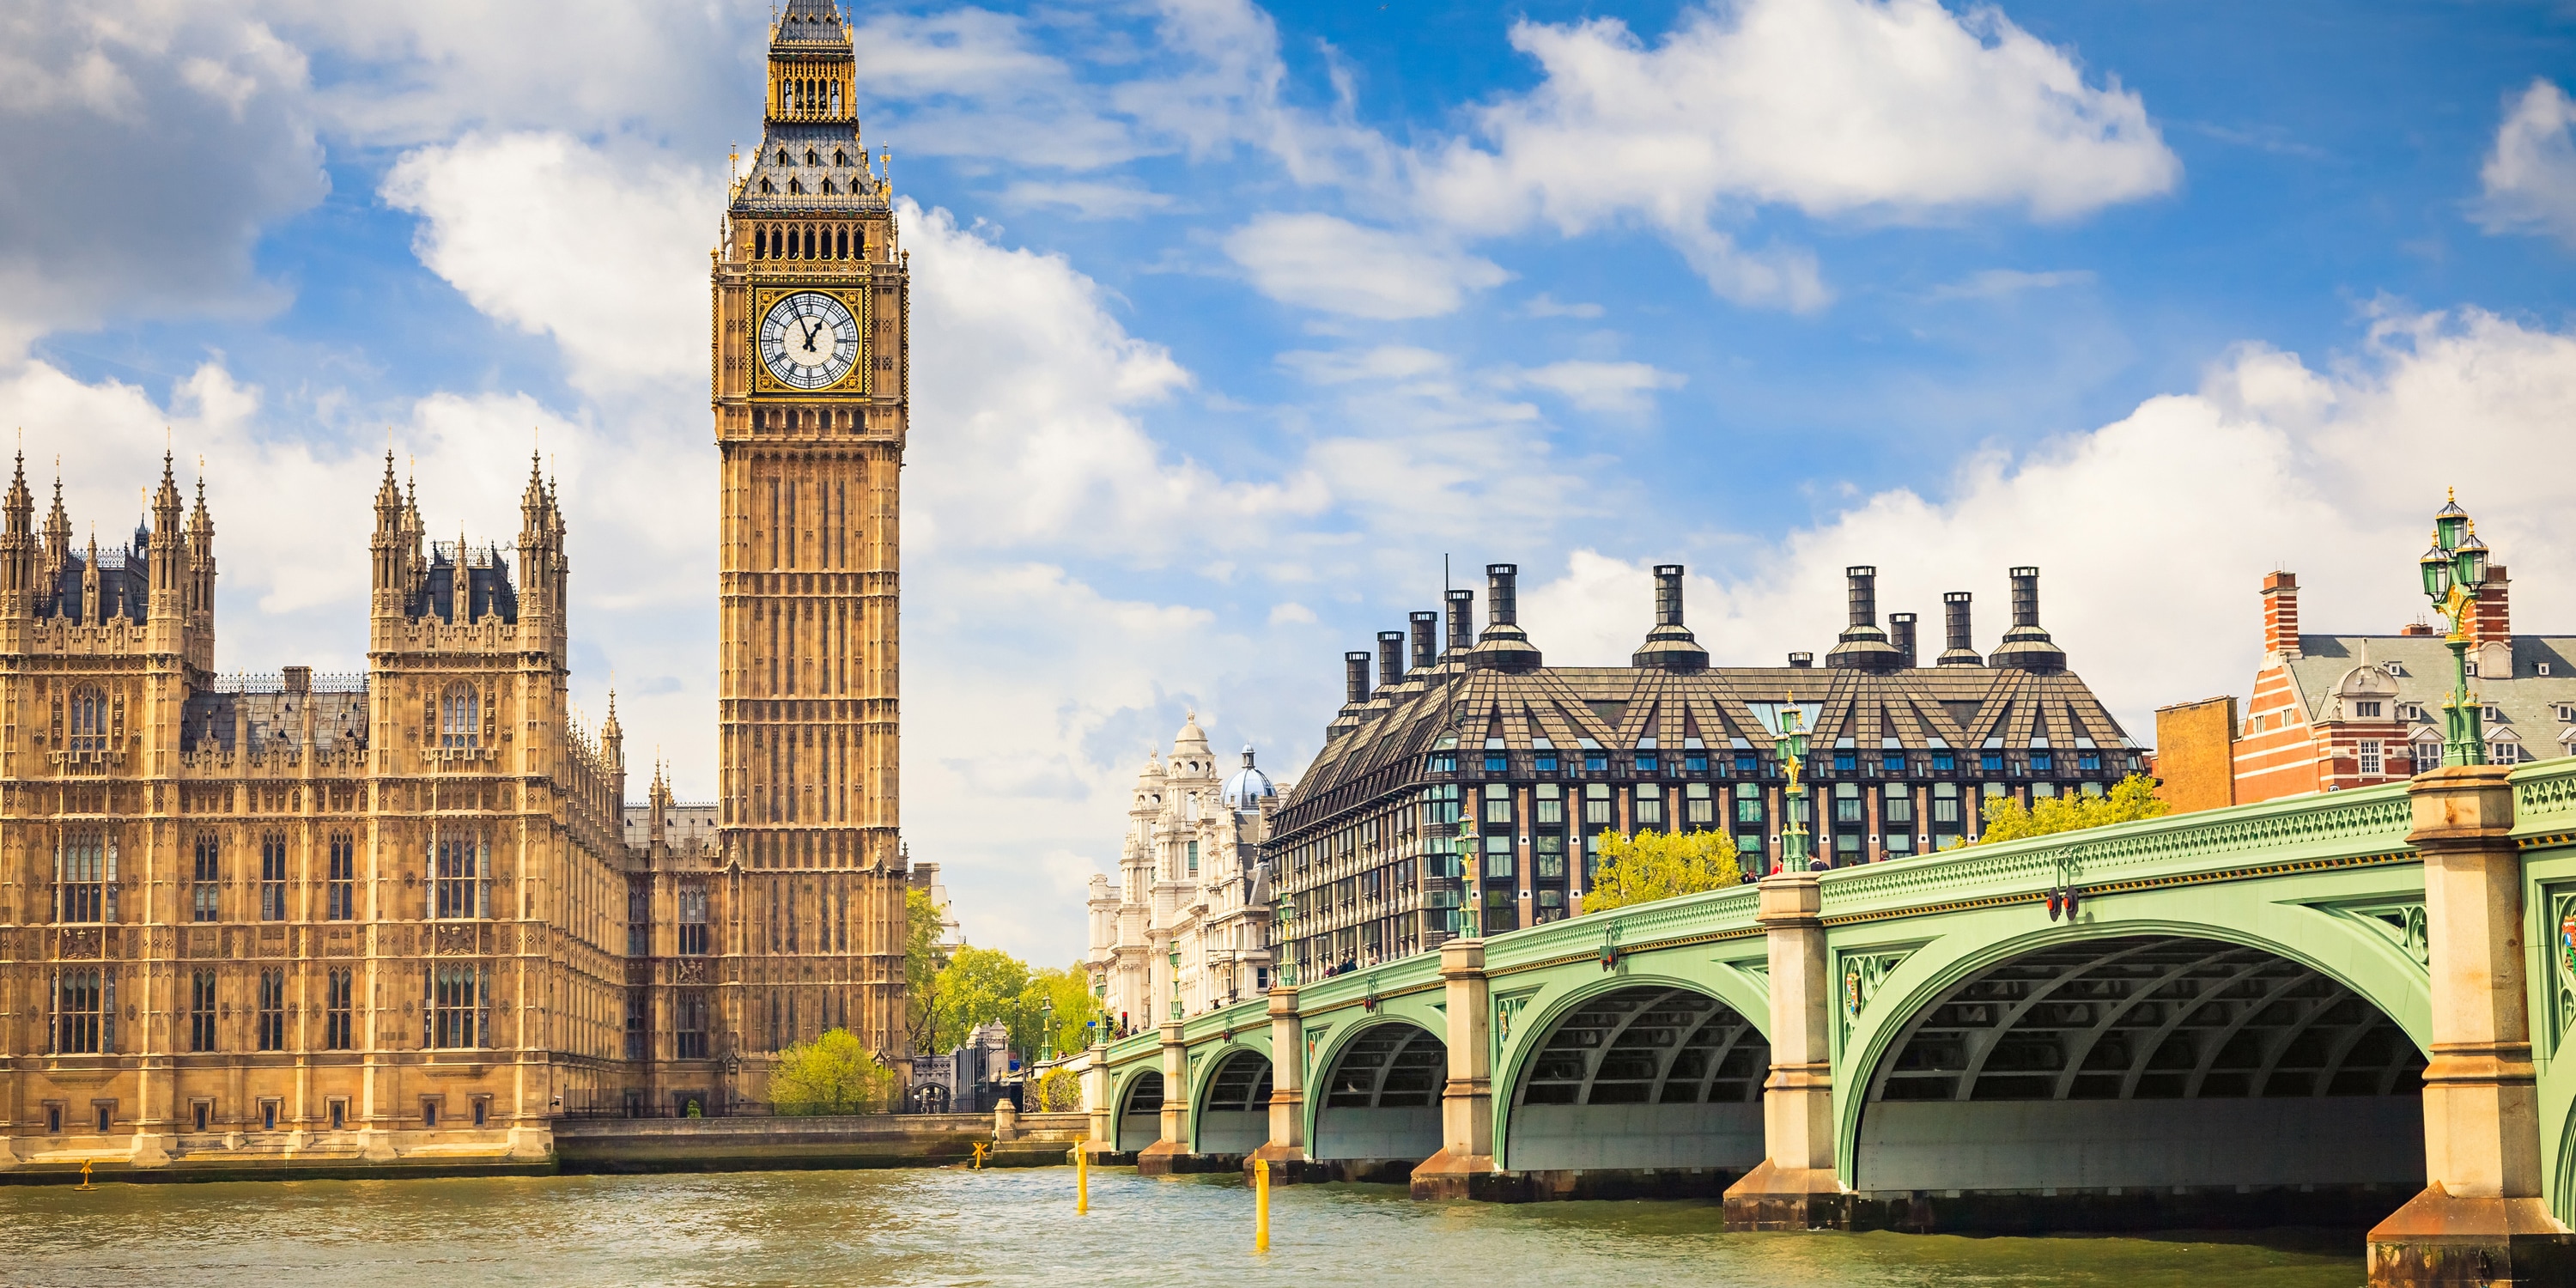 Should You Visit London or Via